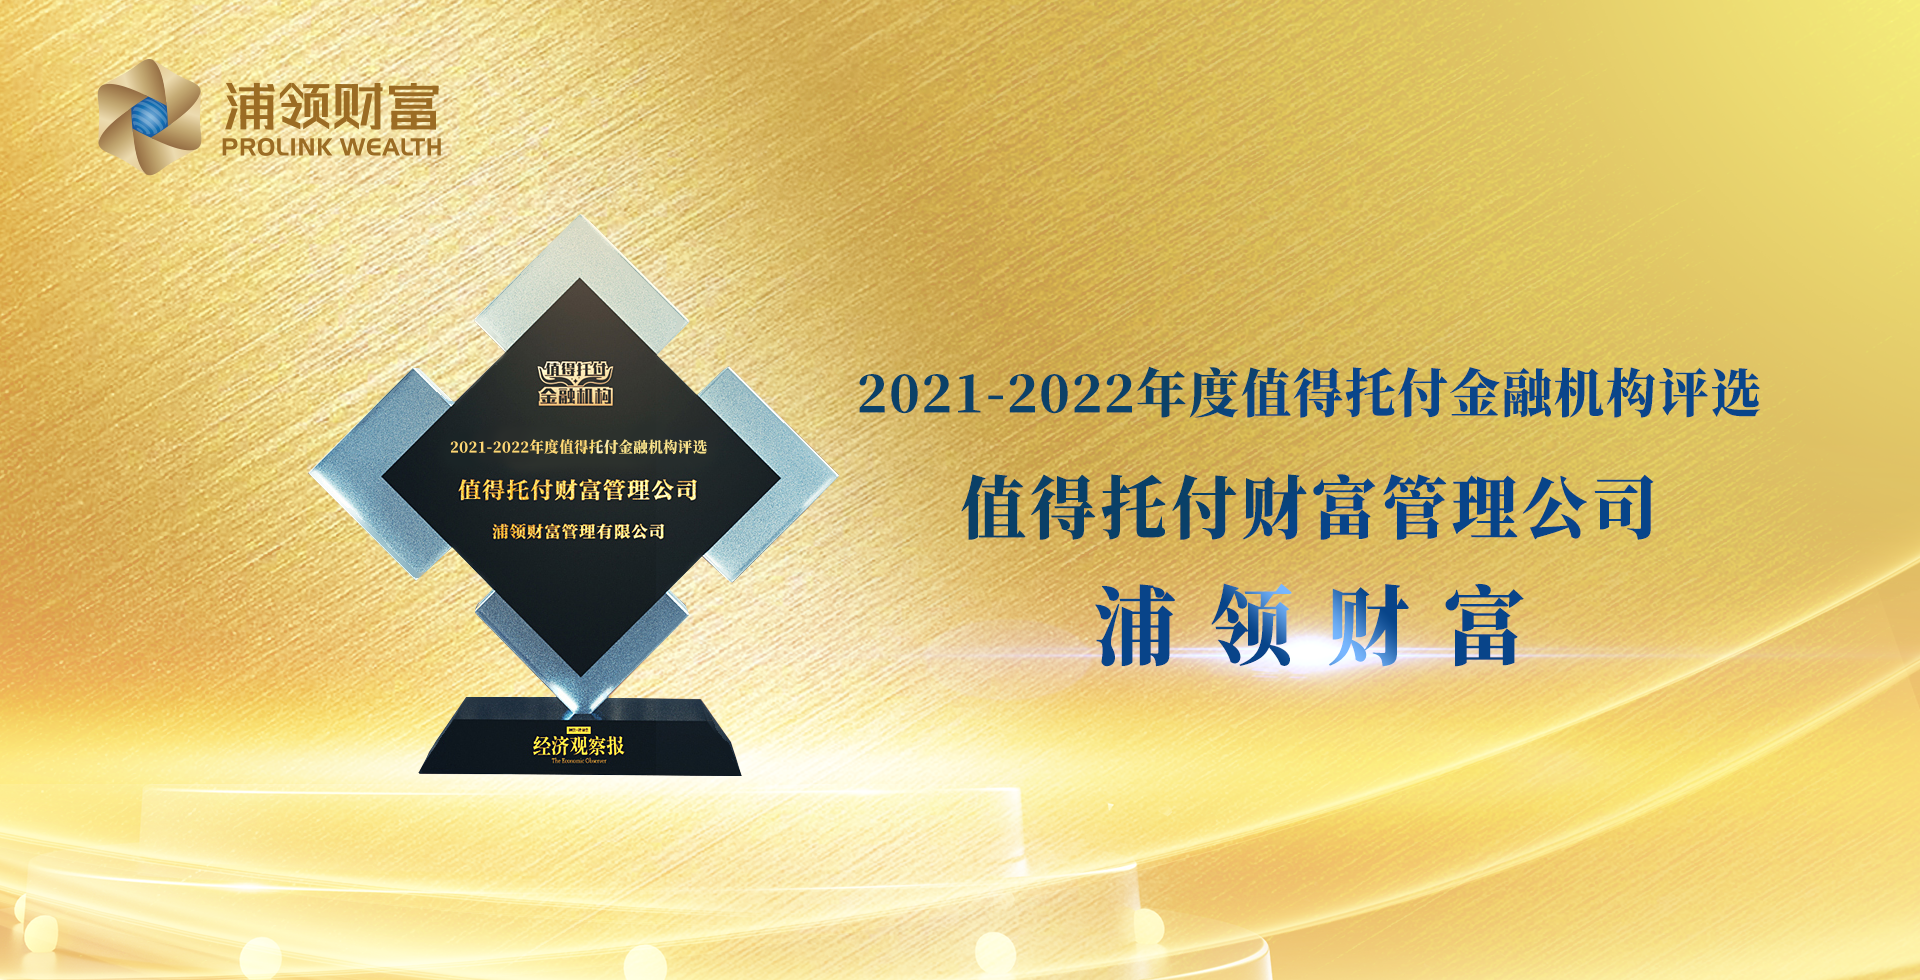 2021-2022年度值得托付金融机构评选